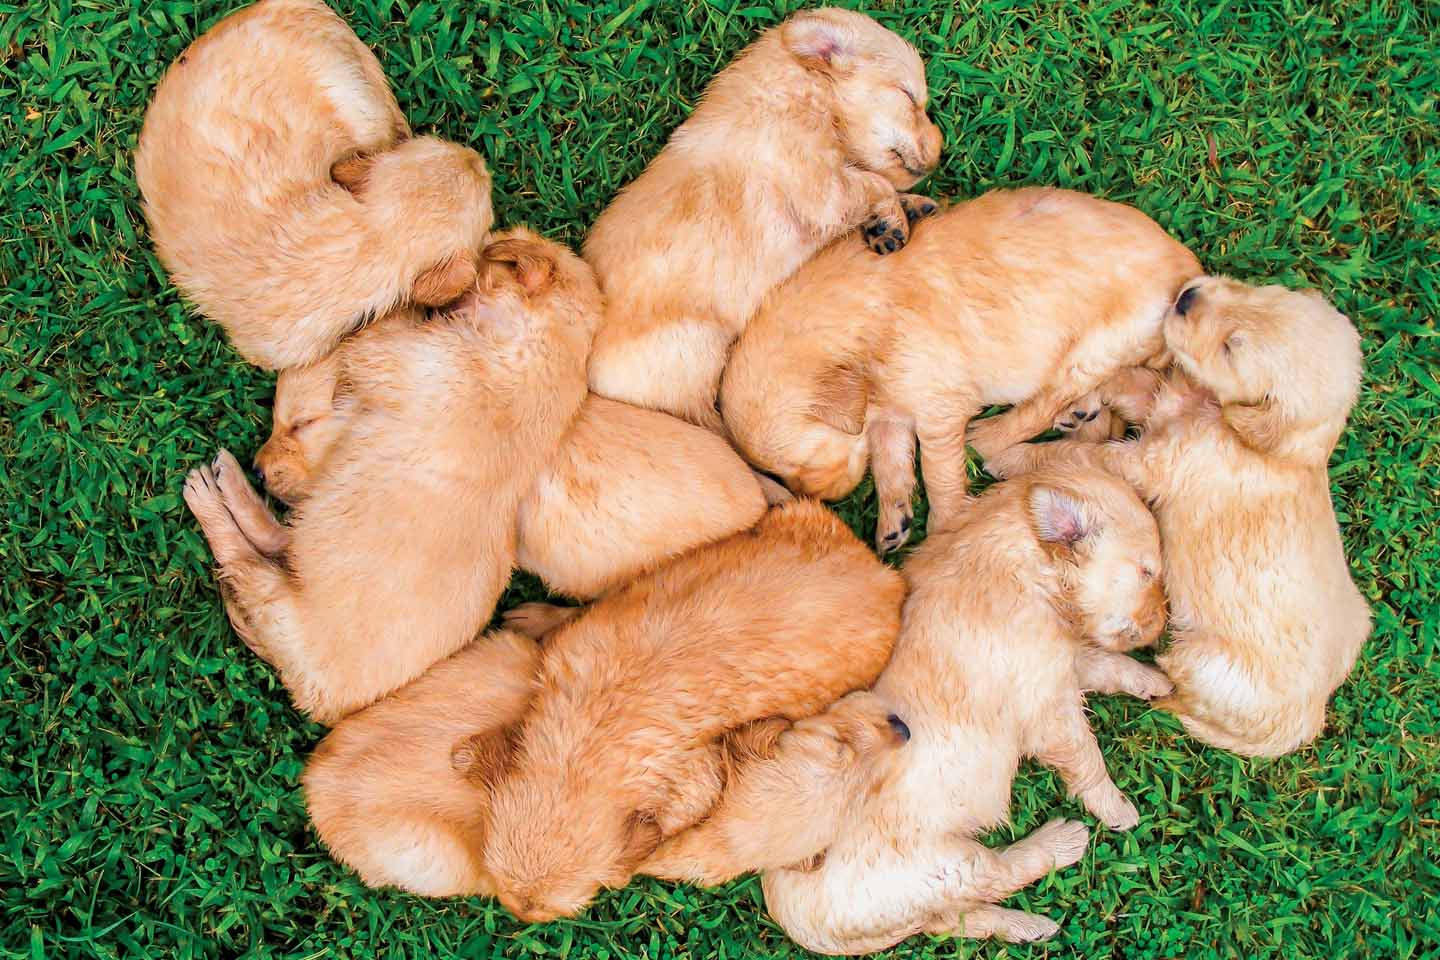 golden retriever puppies asleep on the grass chattanooga